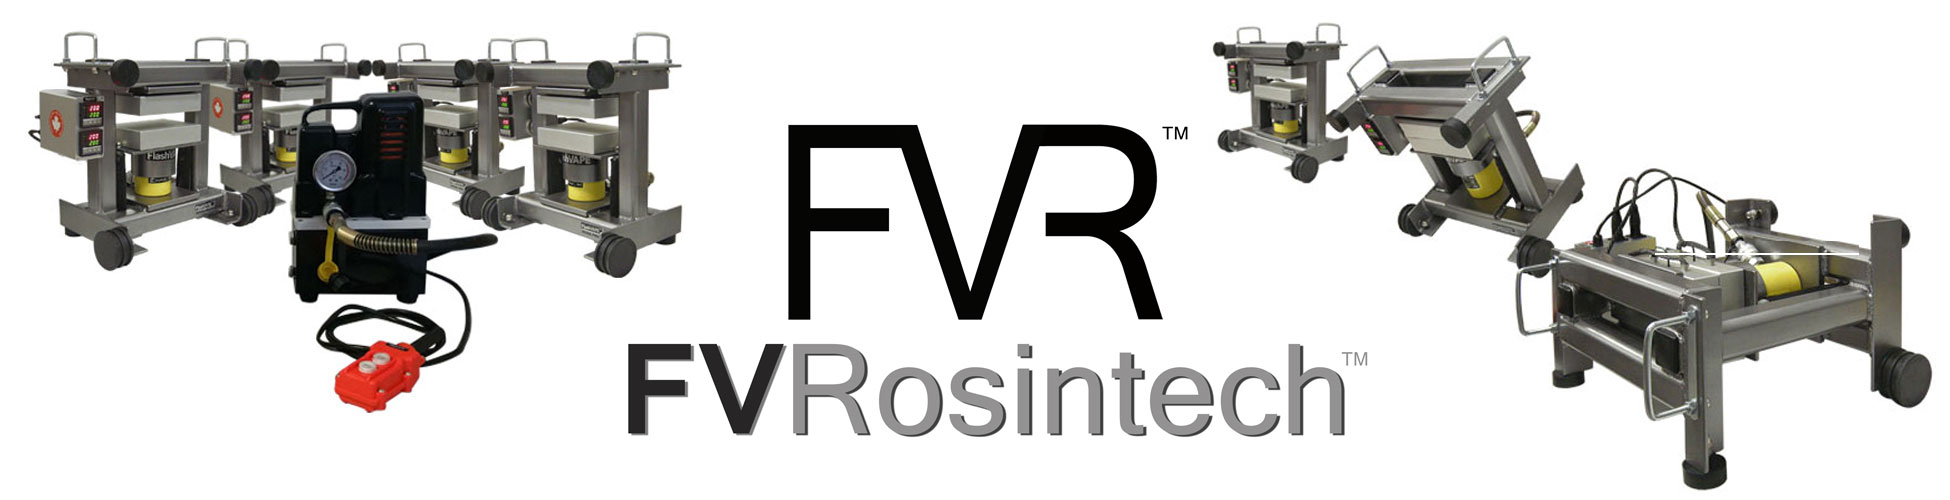 FVR-banner.jpg